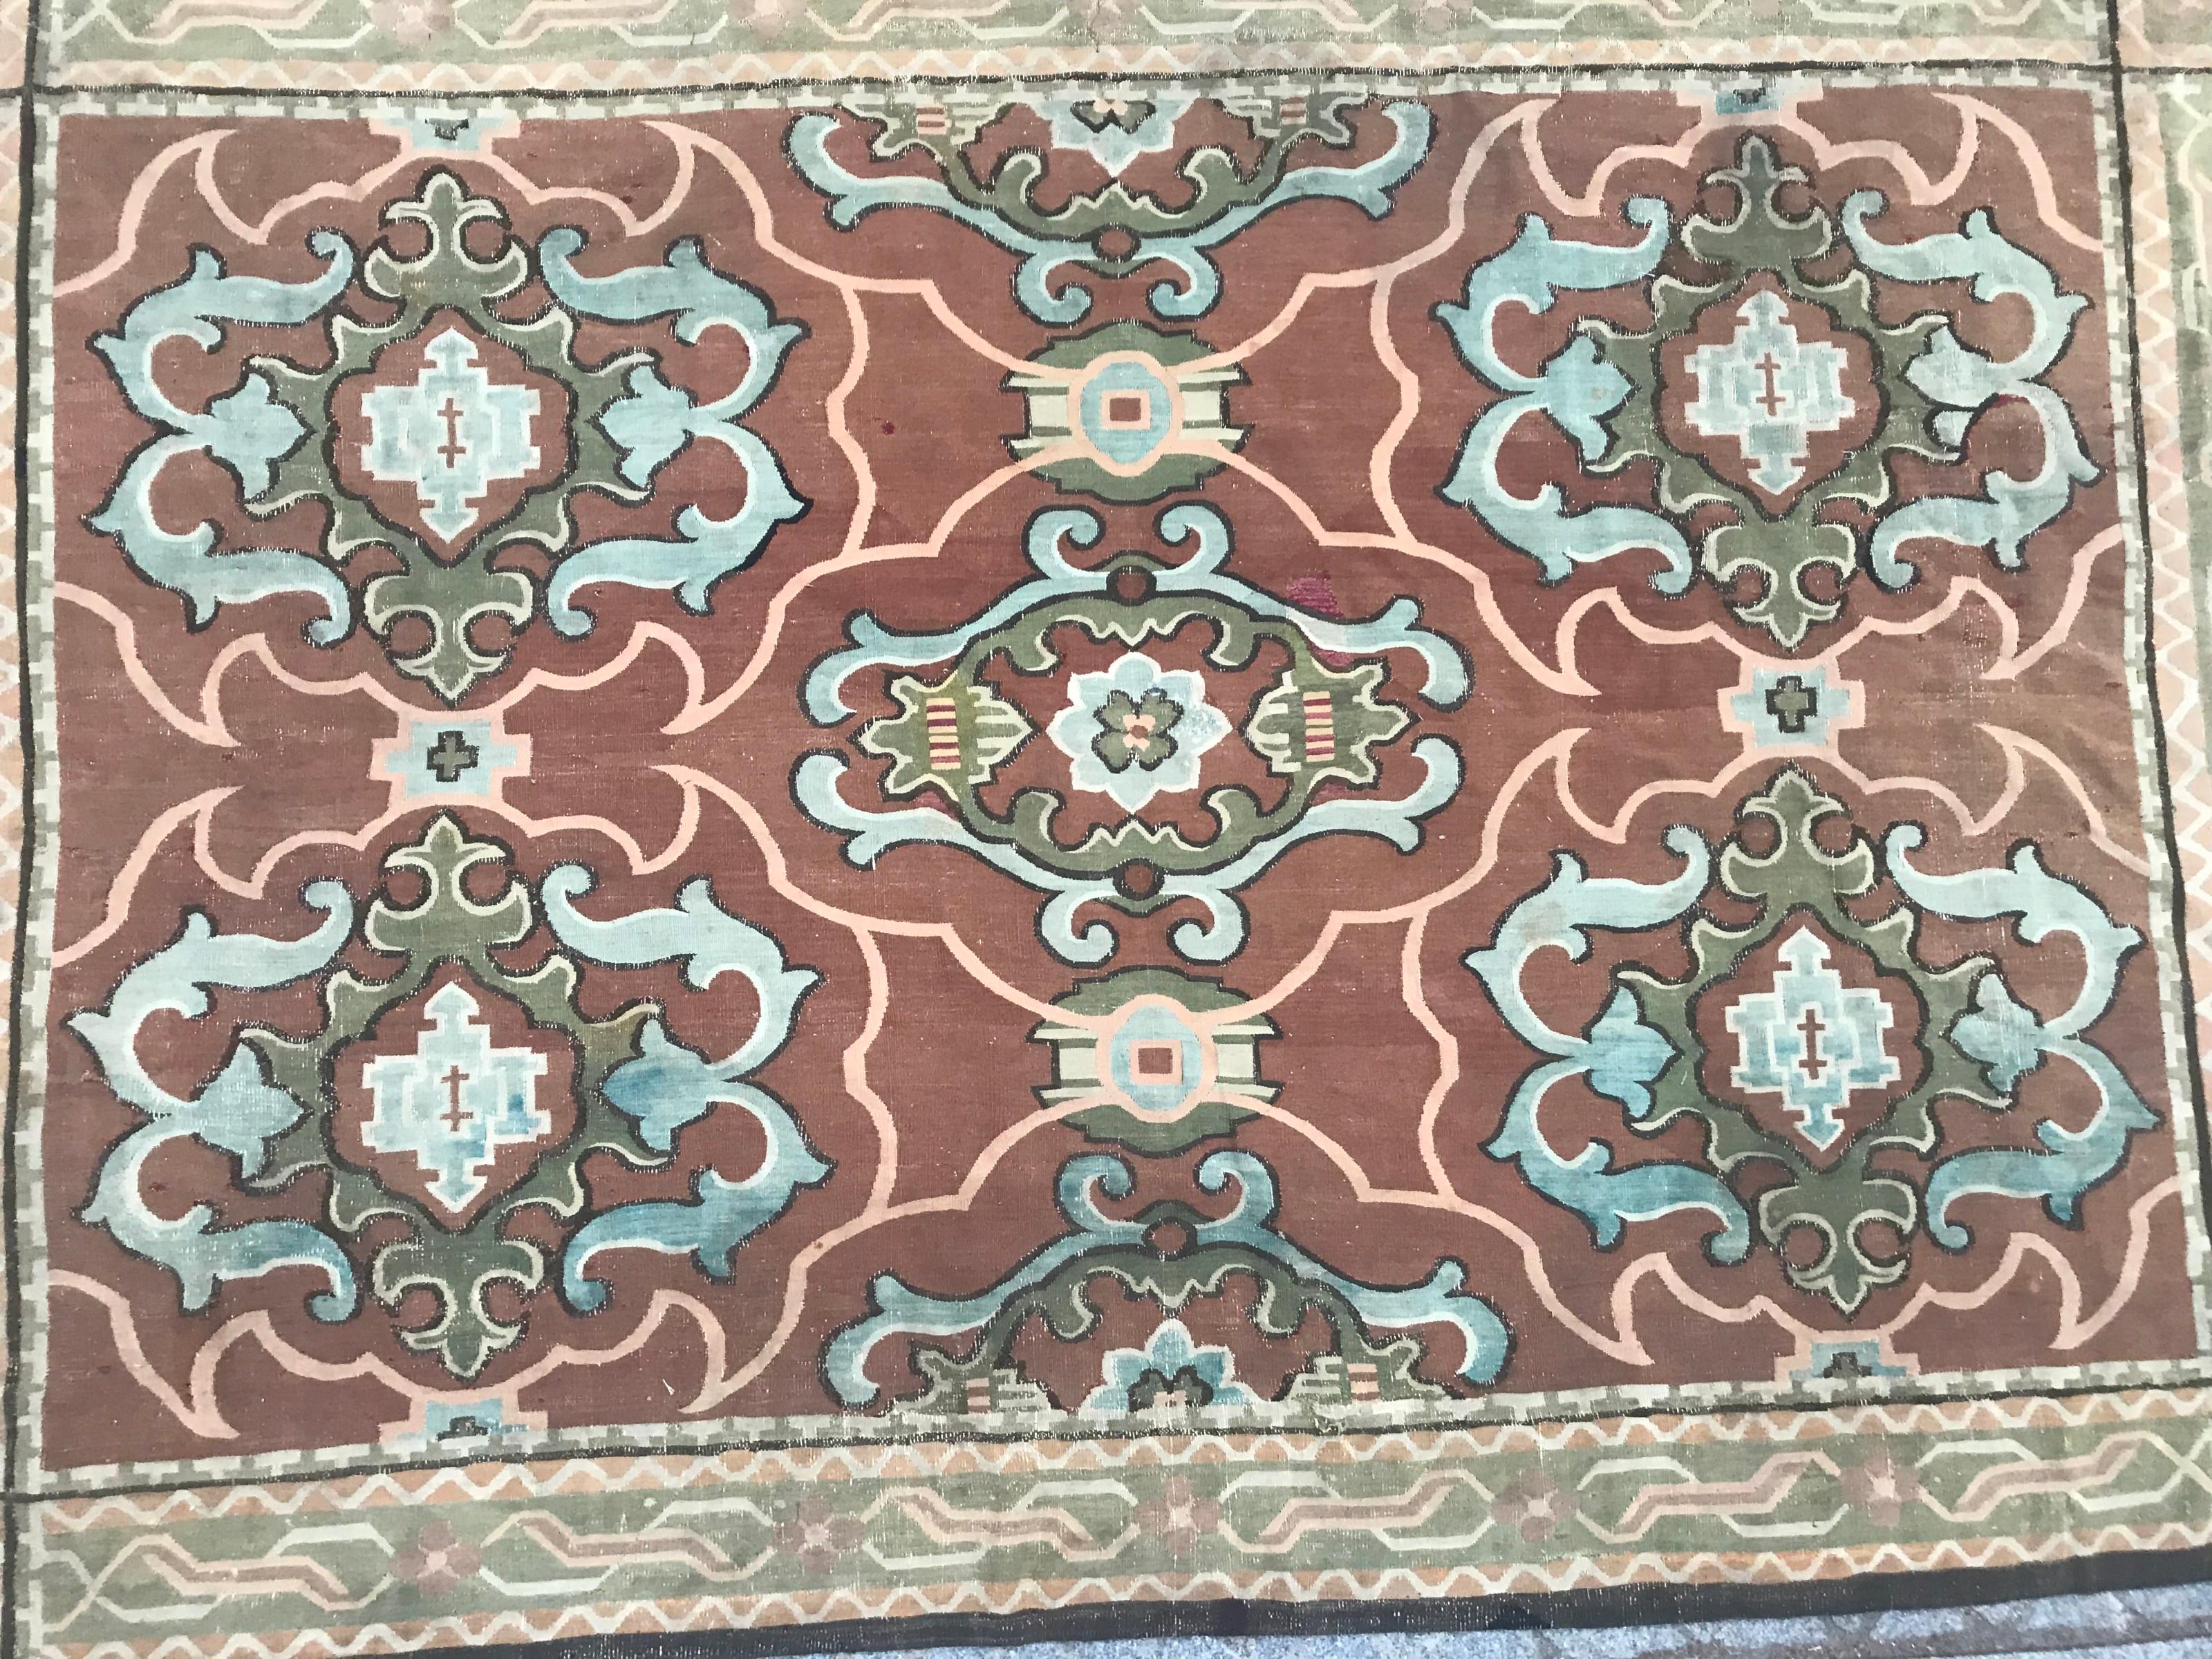 Schöne 19. Jahrhundert Französisch Aubusson Teppich mit schönen dekorativen Design Französisch Louis der XIV-Stil, und natürlichen Farben mit braun, grün und blau, ganz handgewebt mit Wolle auf Baumwolle Stiftung.

✨✨✨
